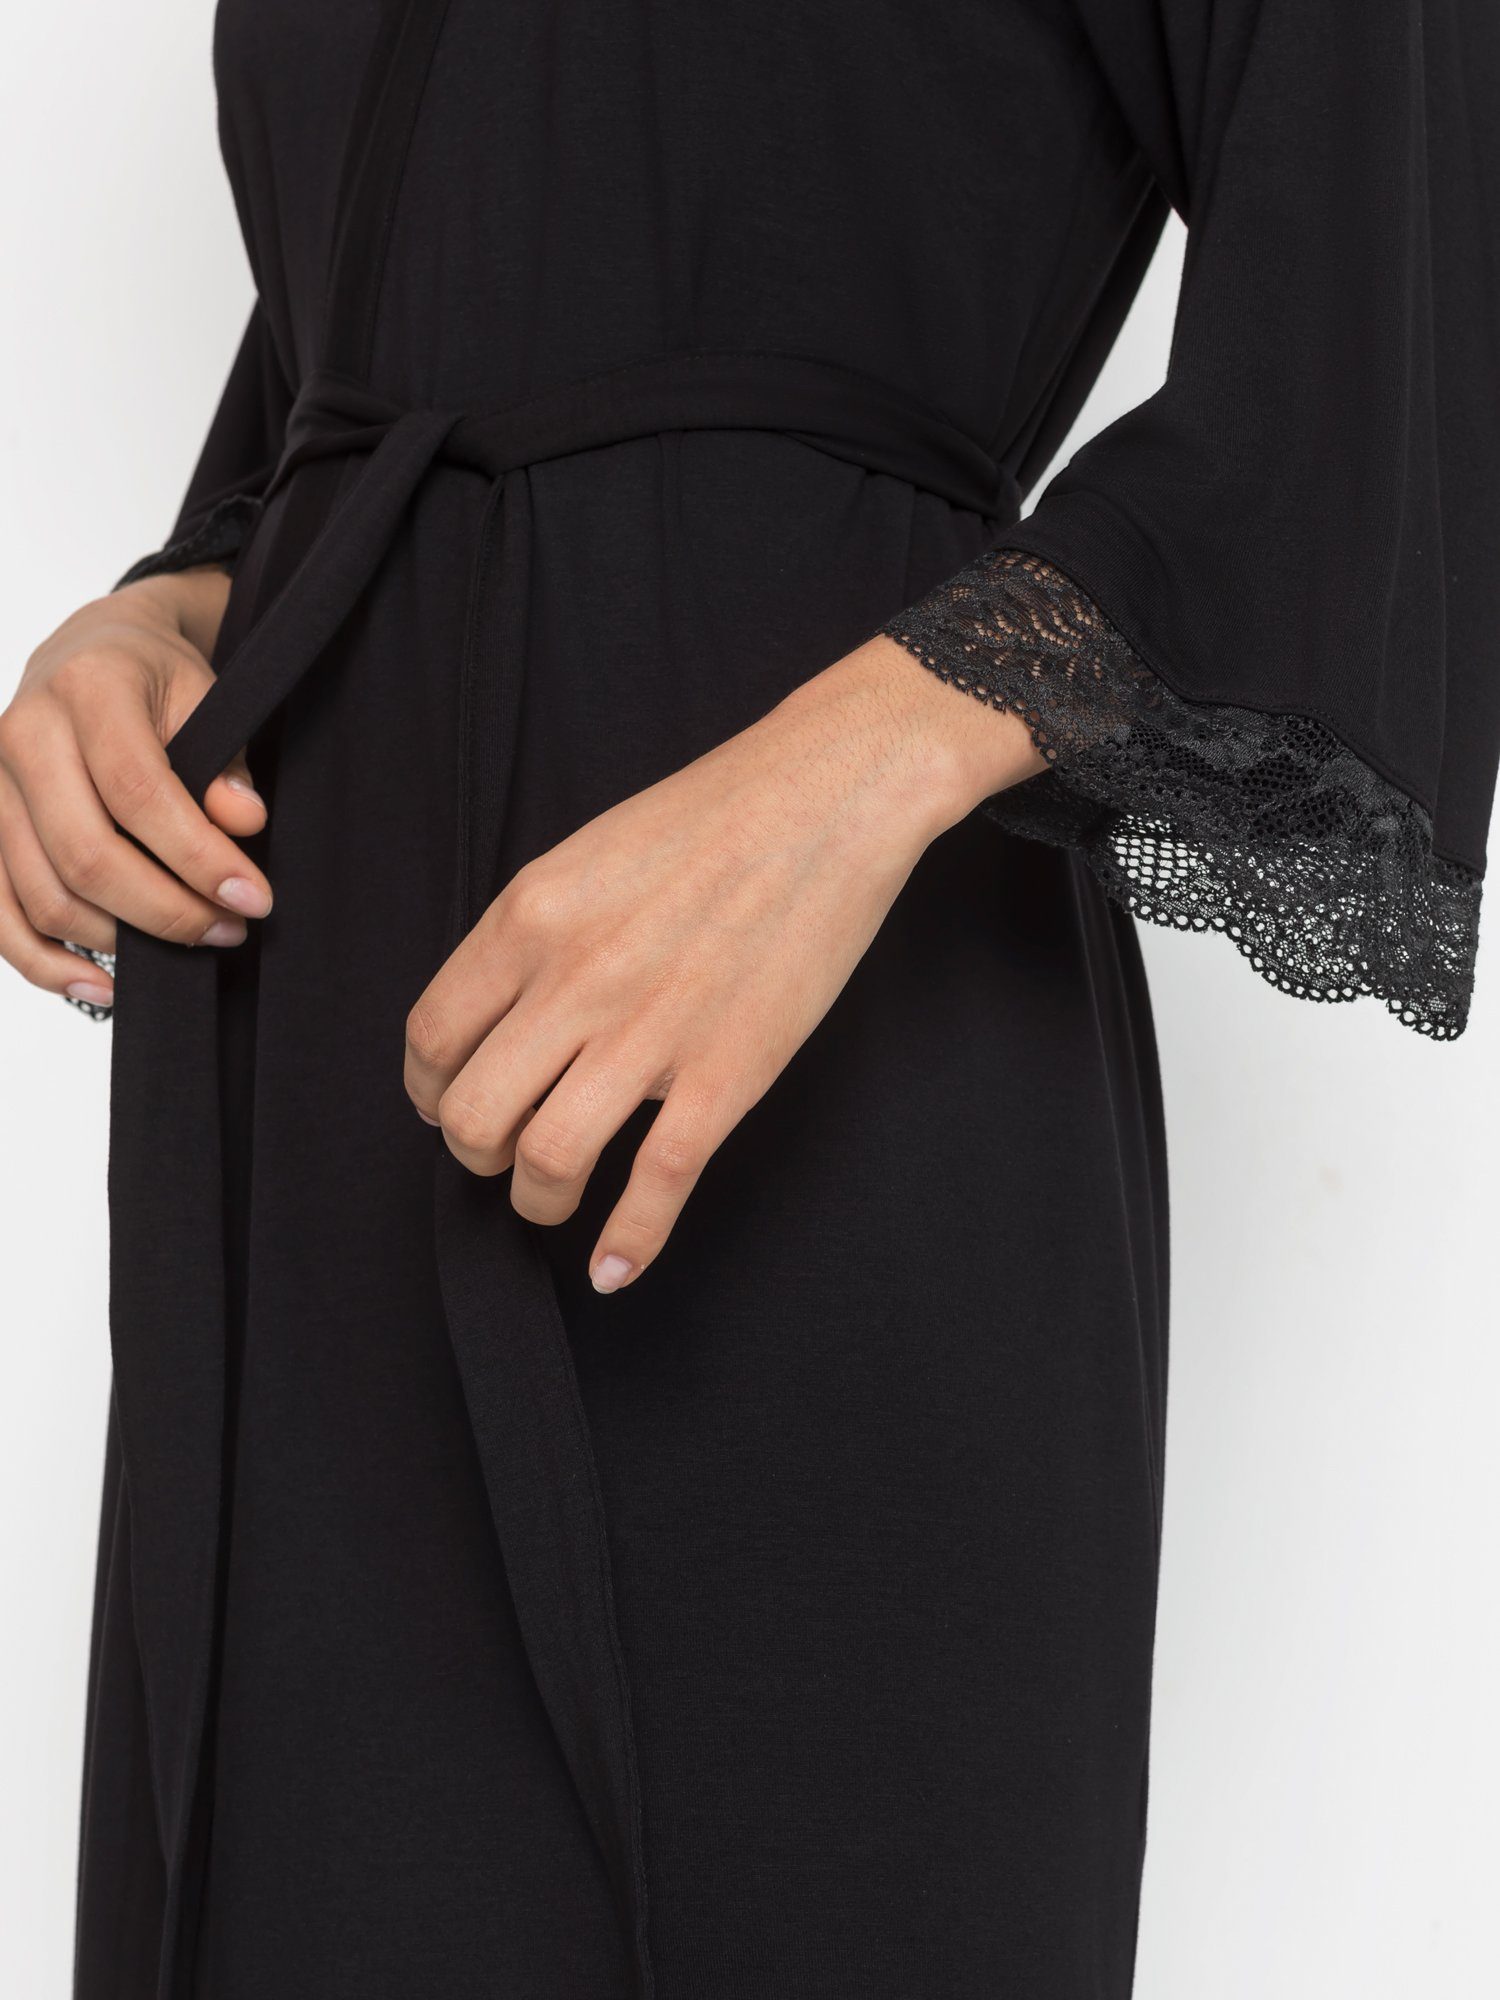 LASCANA Kimono, Midilänge, schönen Kimono-Kragen, schwarz mit Single-Jersey, Spitzendetails